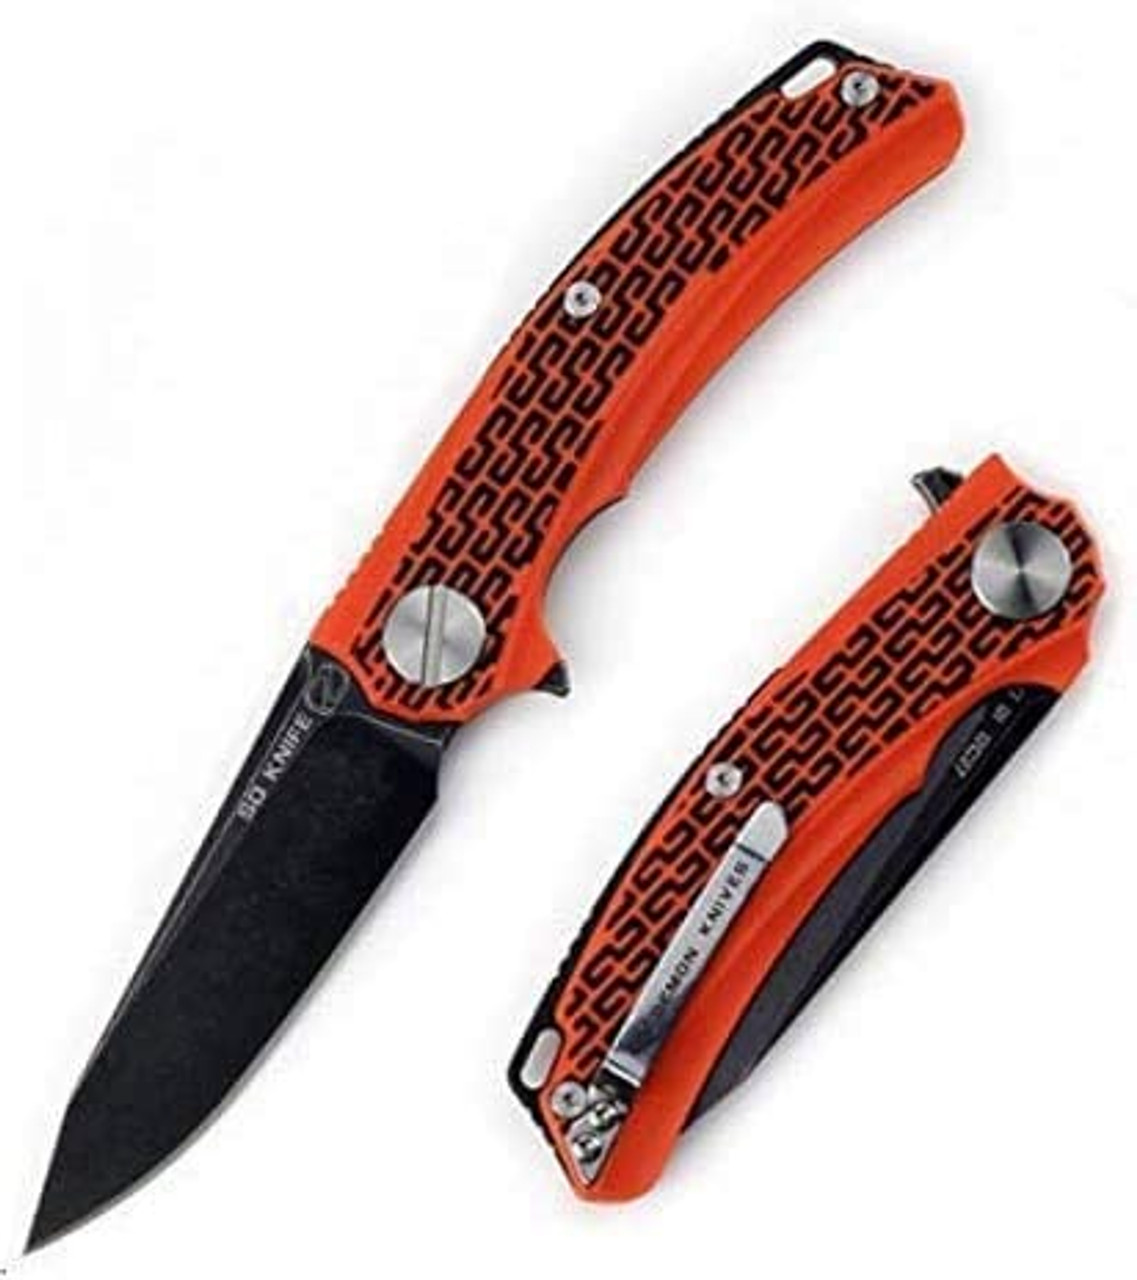 Stedemon Black Orange BG 0106 Folding Knife product image